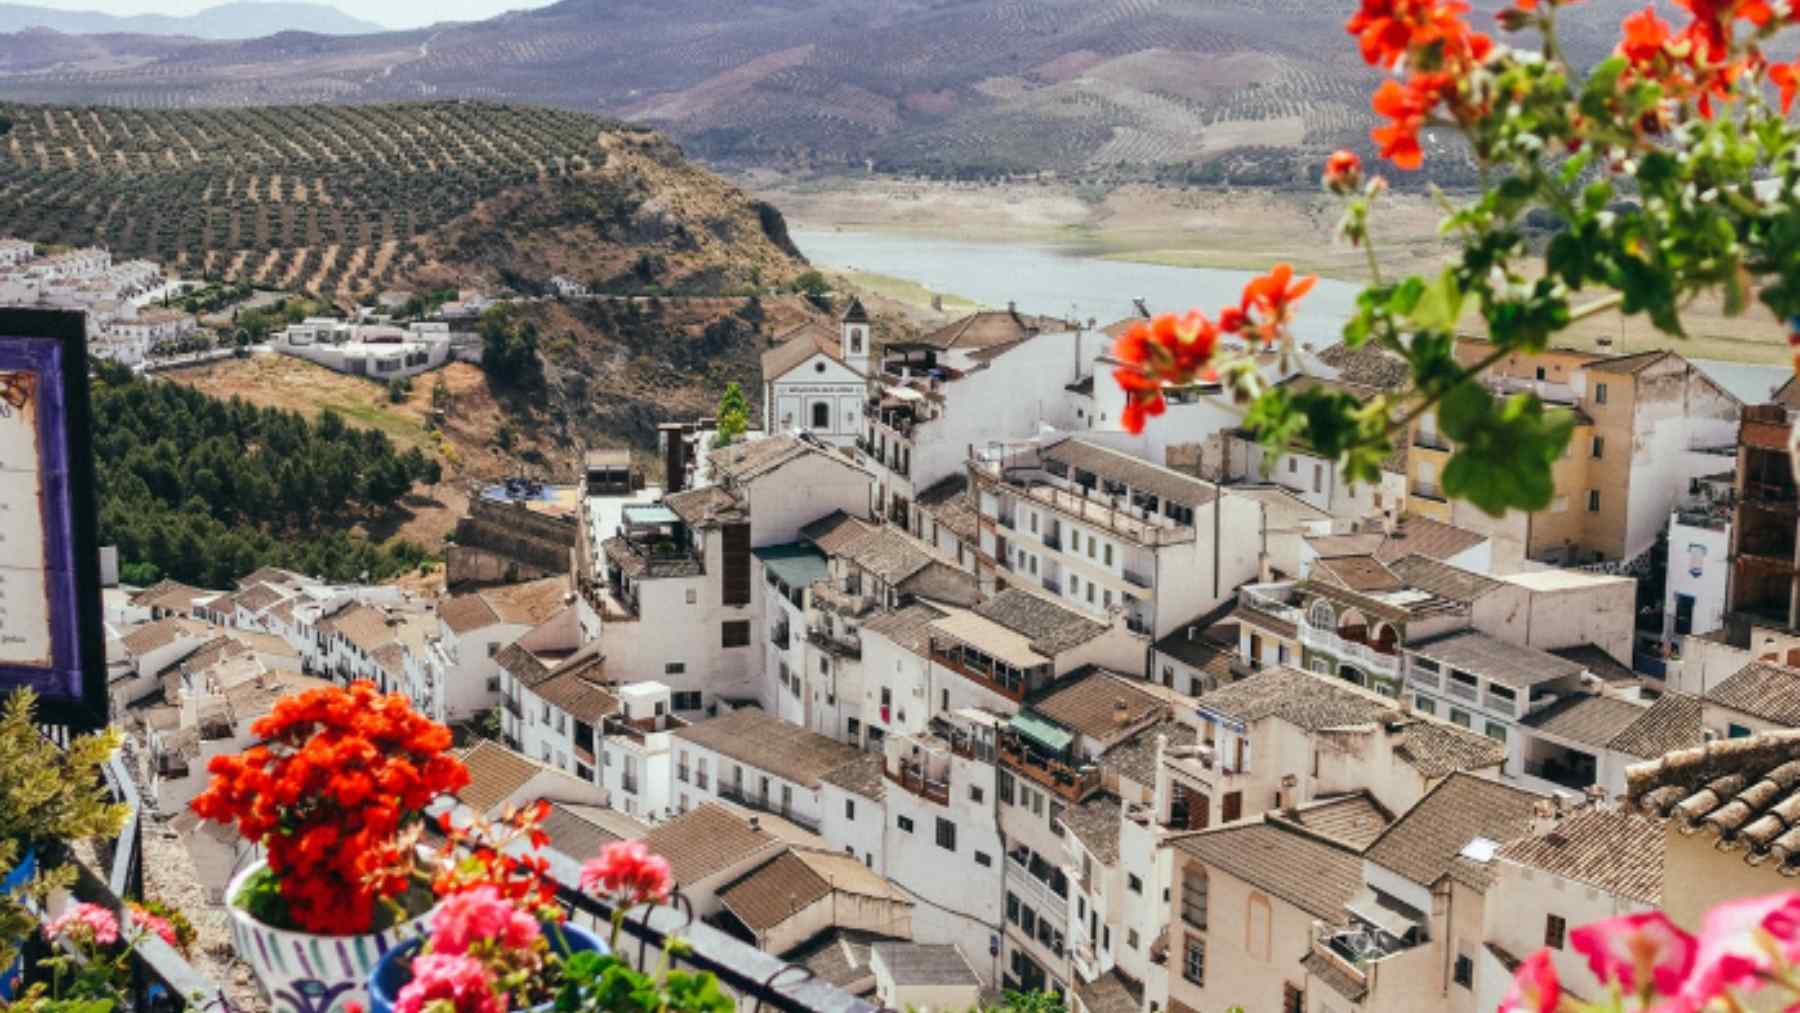 El pequeño pueblo de España considerado el más bonito del país según National Geographic